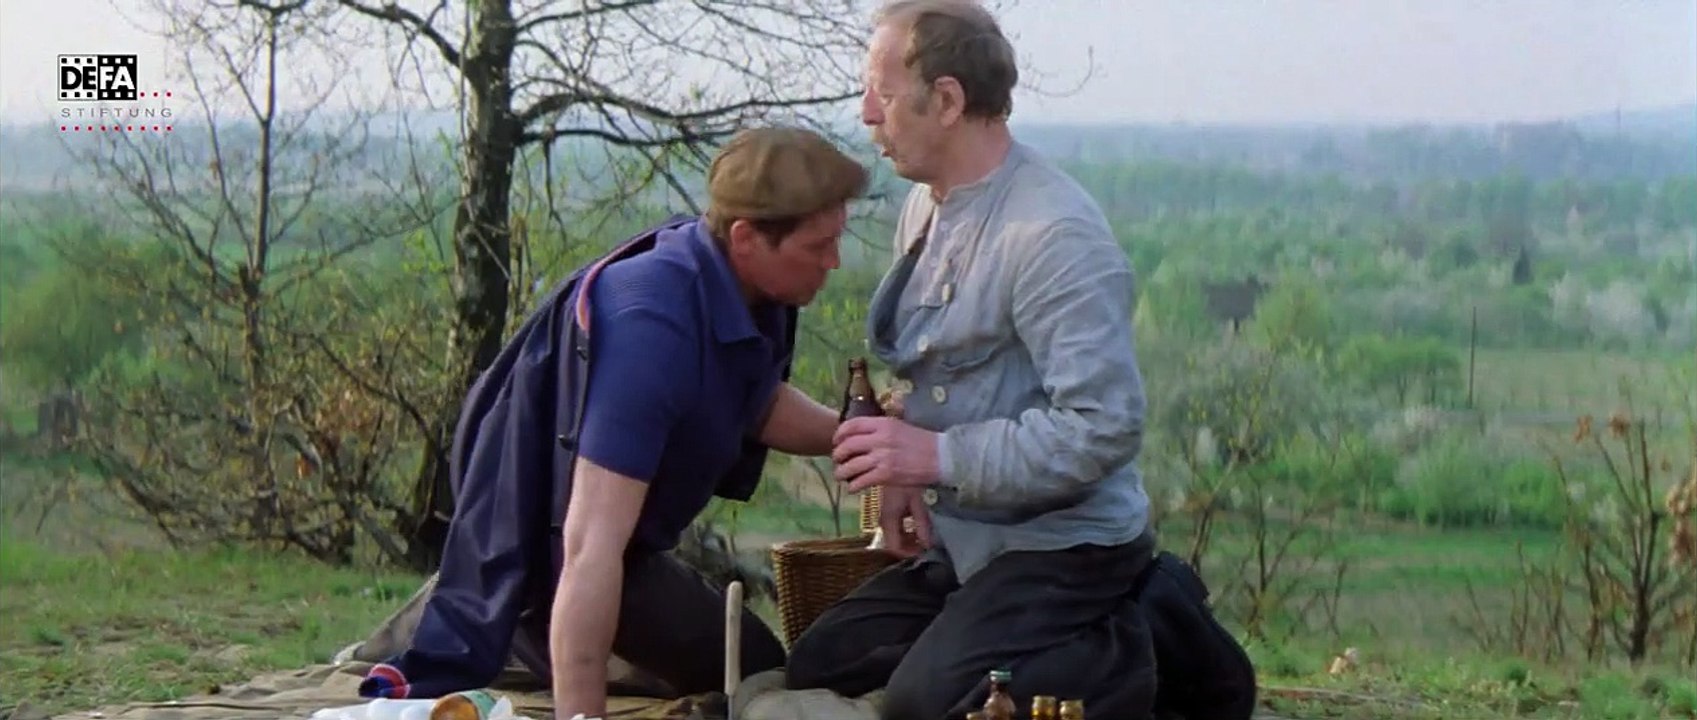 Anton, der Zauberer | movie | 1978 | Official Trailer